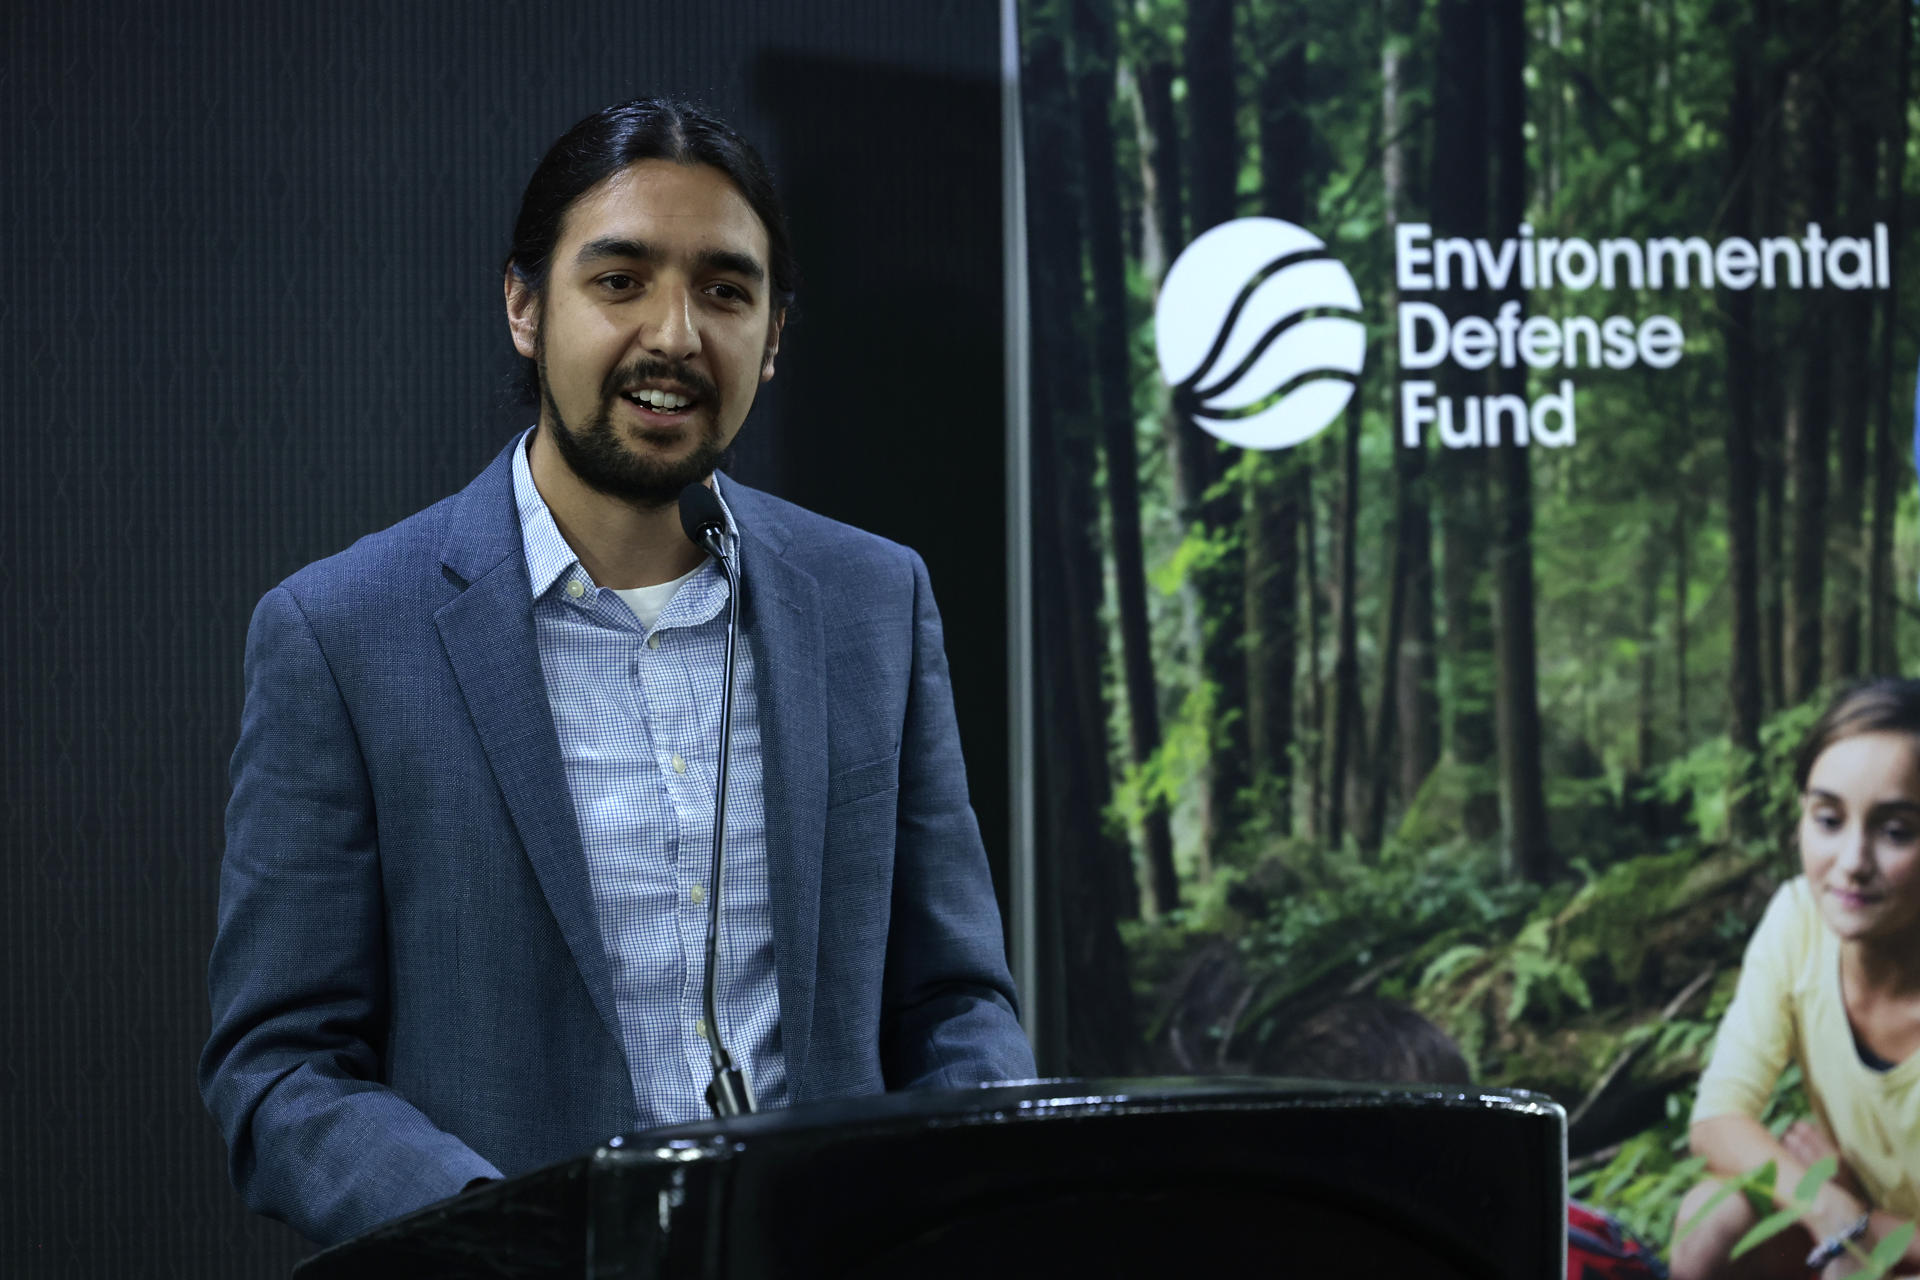 El científico del Fondo para la Defensa del Medio Ambiente, Daniel Zavala Araiza, habla durante una rueda de prensa hoy en Ciudad de México (México). EFE/José Méndez